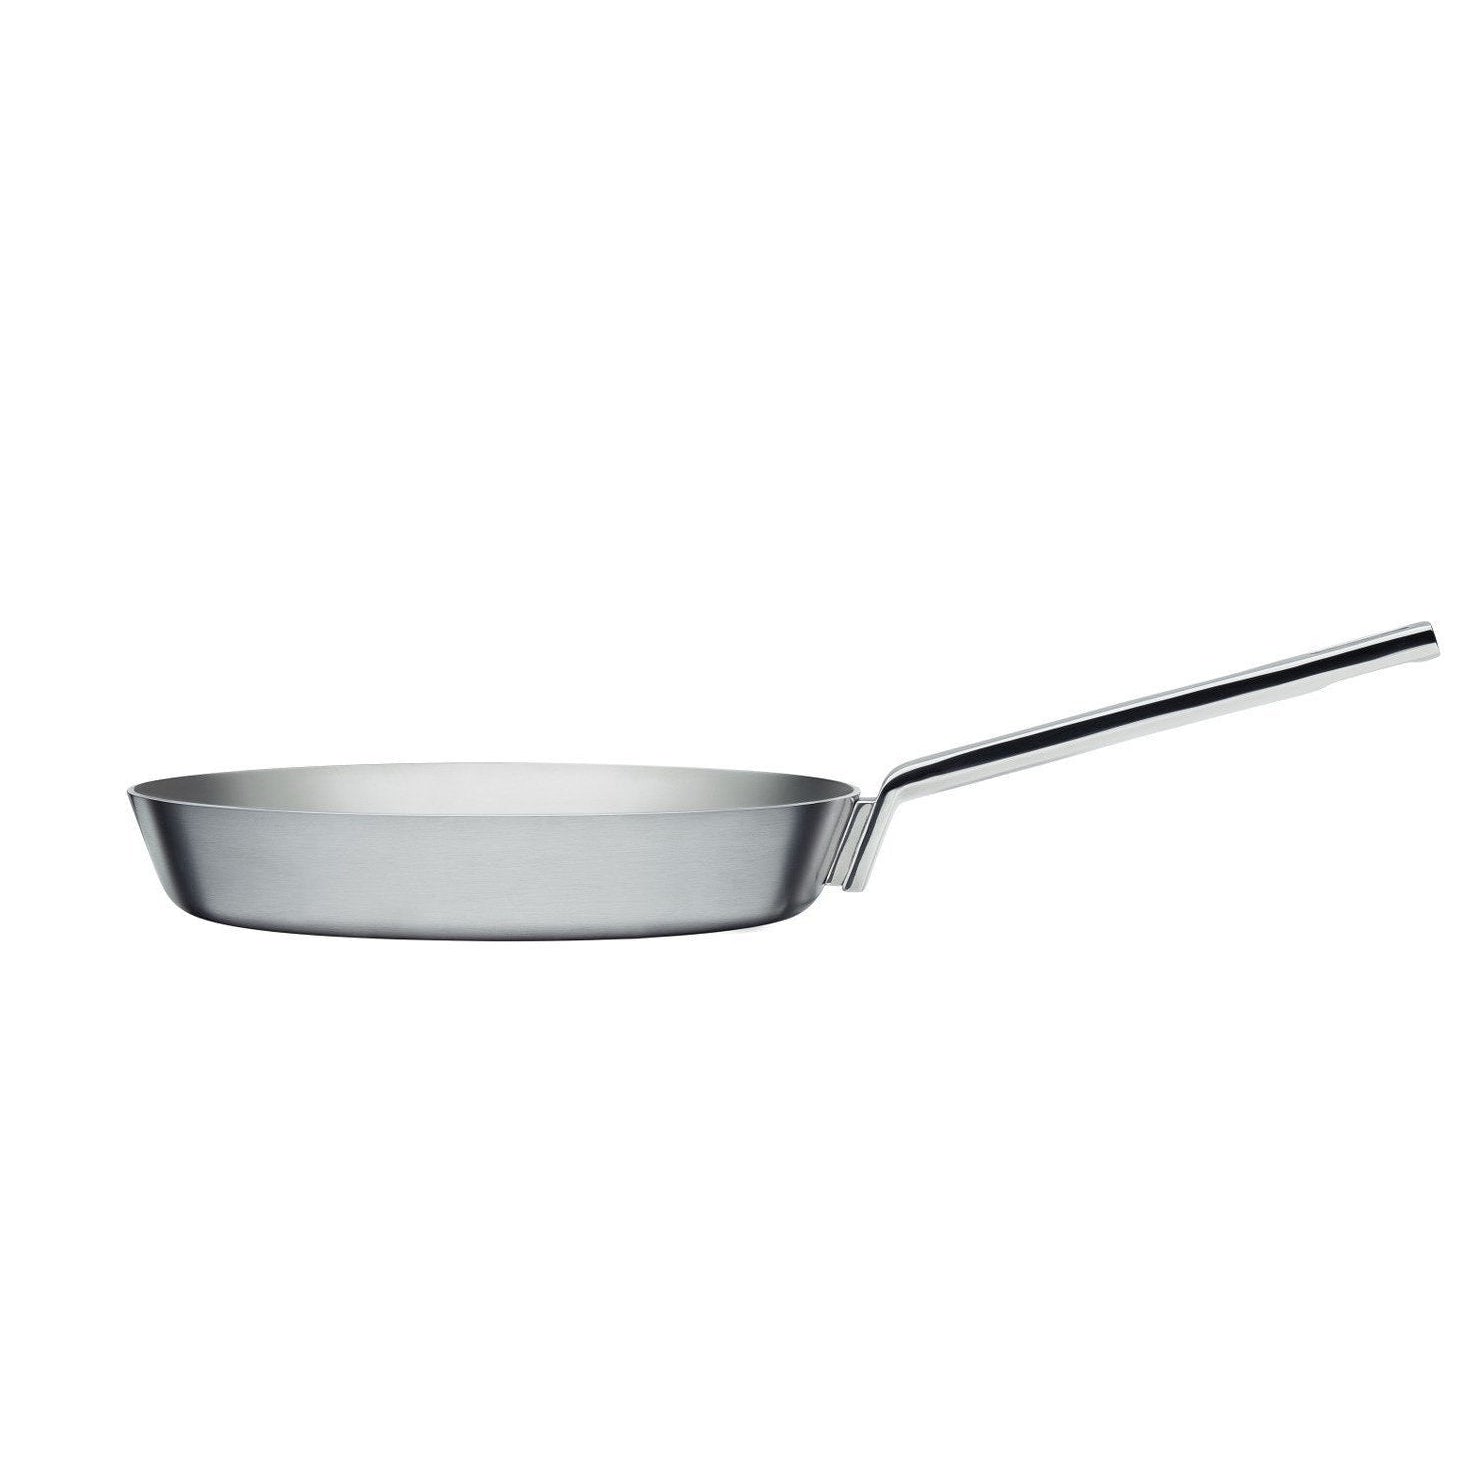 Iittala Tools Friting Pan, 28 cm